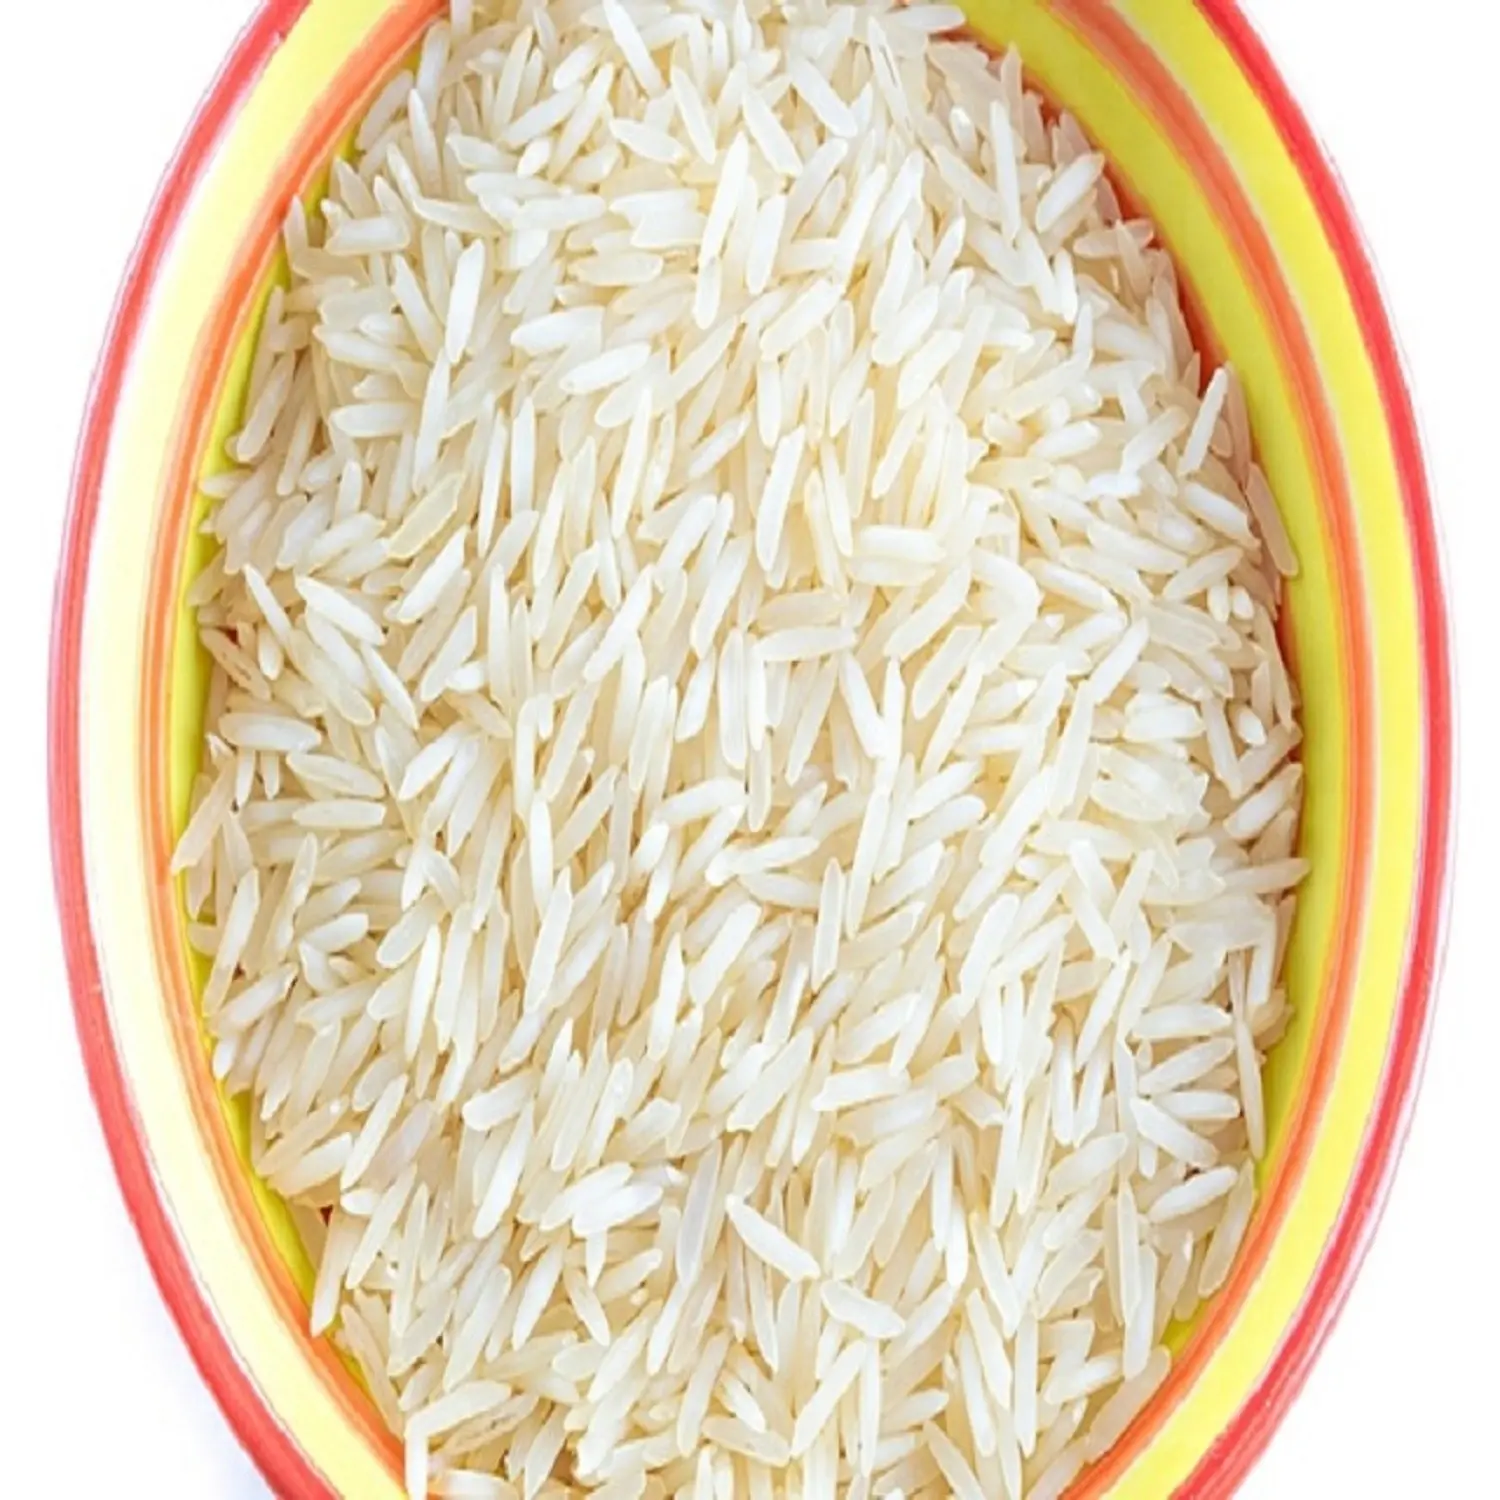 सफेद चावल सबसे अच्छा लंबे समय से अनाज चावल बासमती चावल के लिए थोक मूल्य पर Pulao और बिरयानी